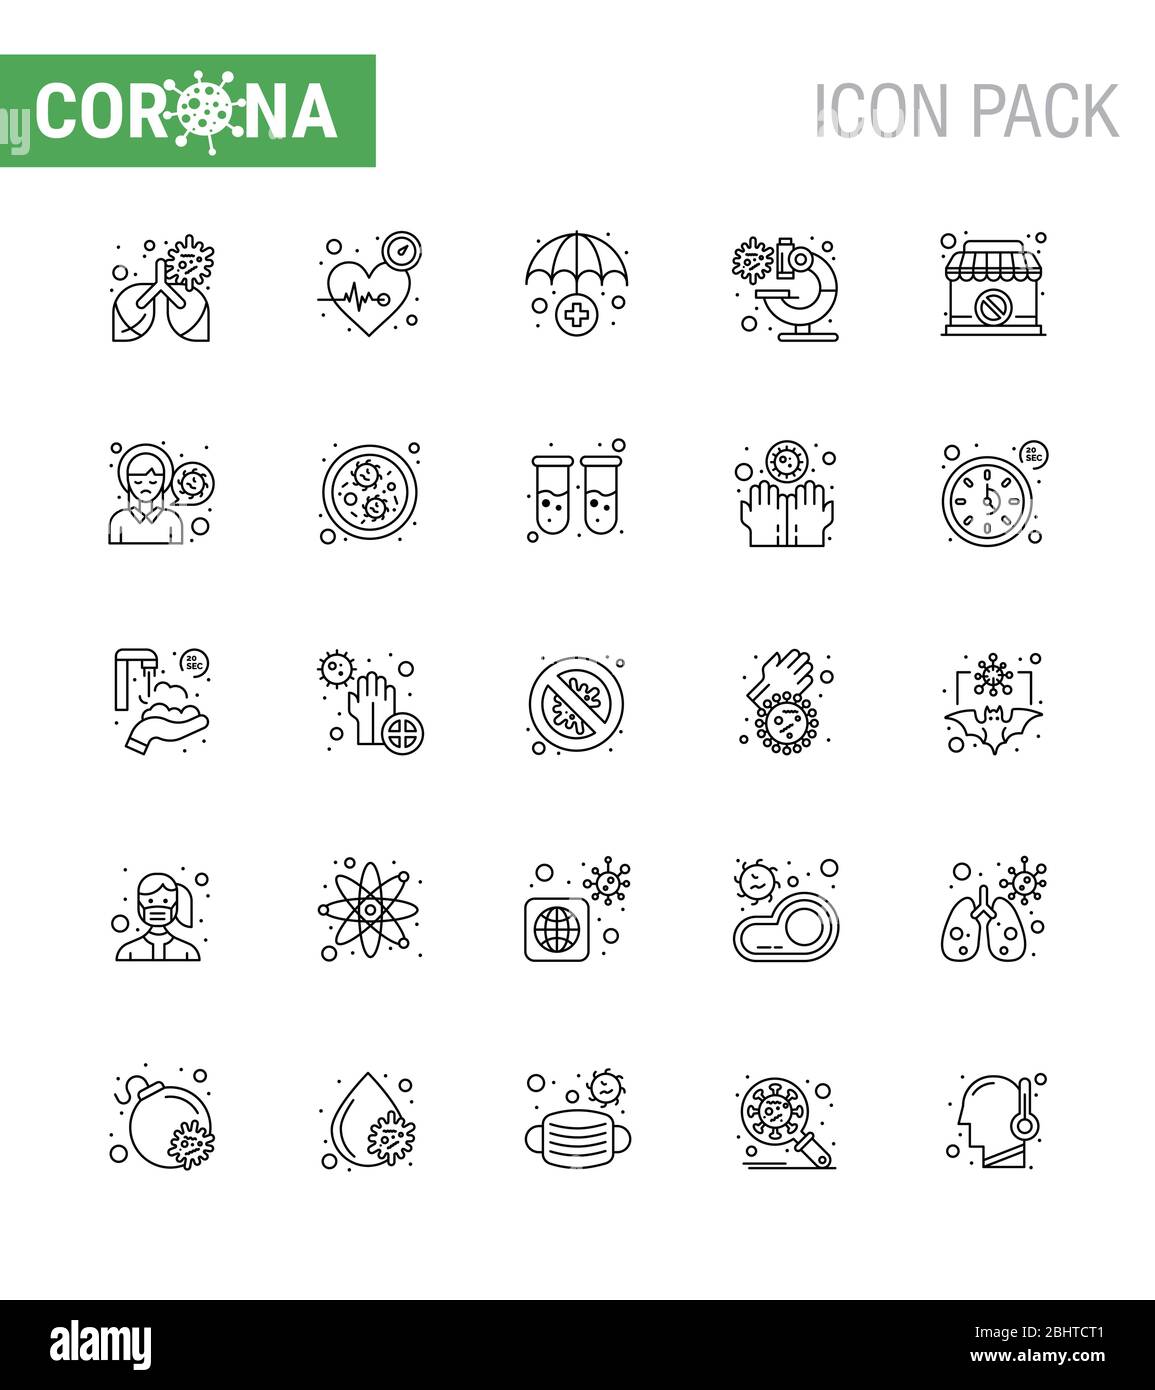 L'icône de la ligne 25 DU CORONAVIRUS sur le thème de l'épidémie de Corona contient des icônes telles que le magasin, le virus, les soins, le microscope, le coronavirus viral de bactéries 2019-nov Illustration de Vecteur